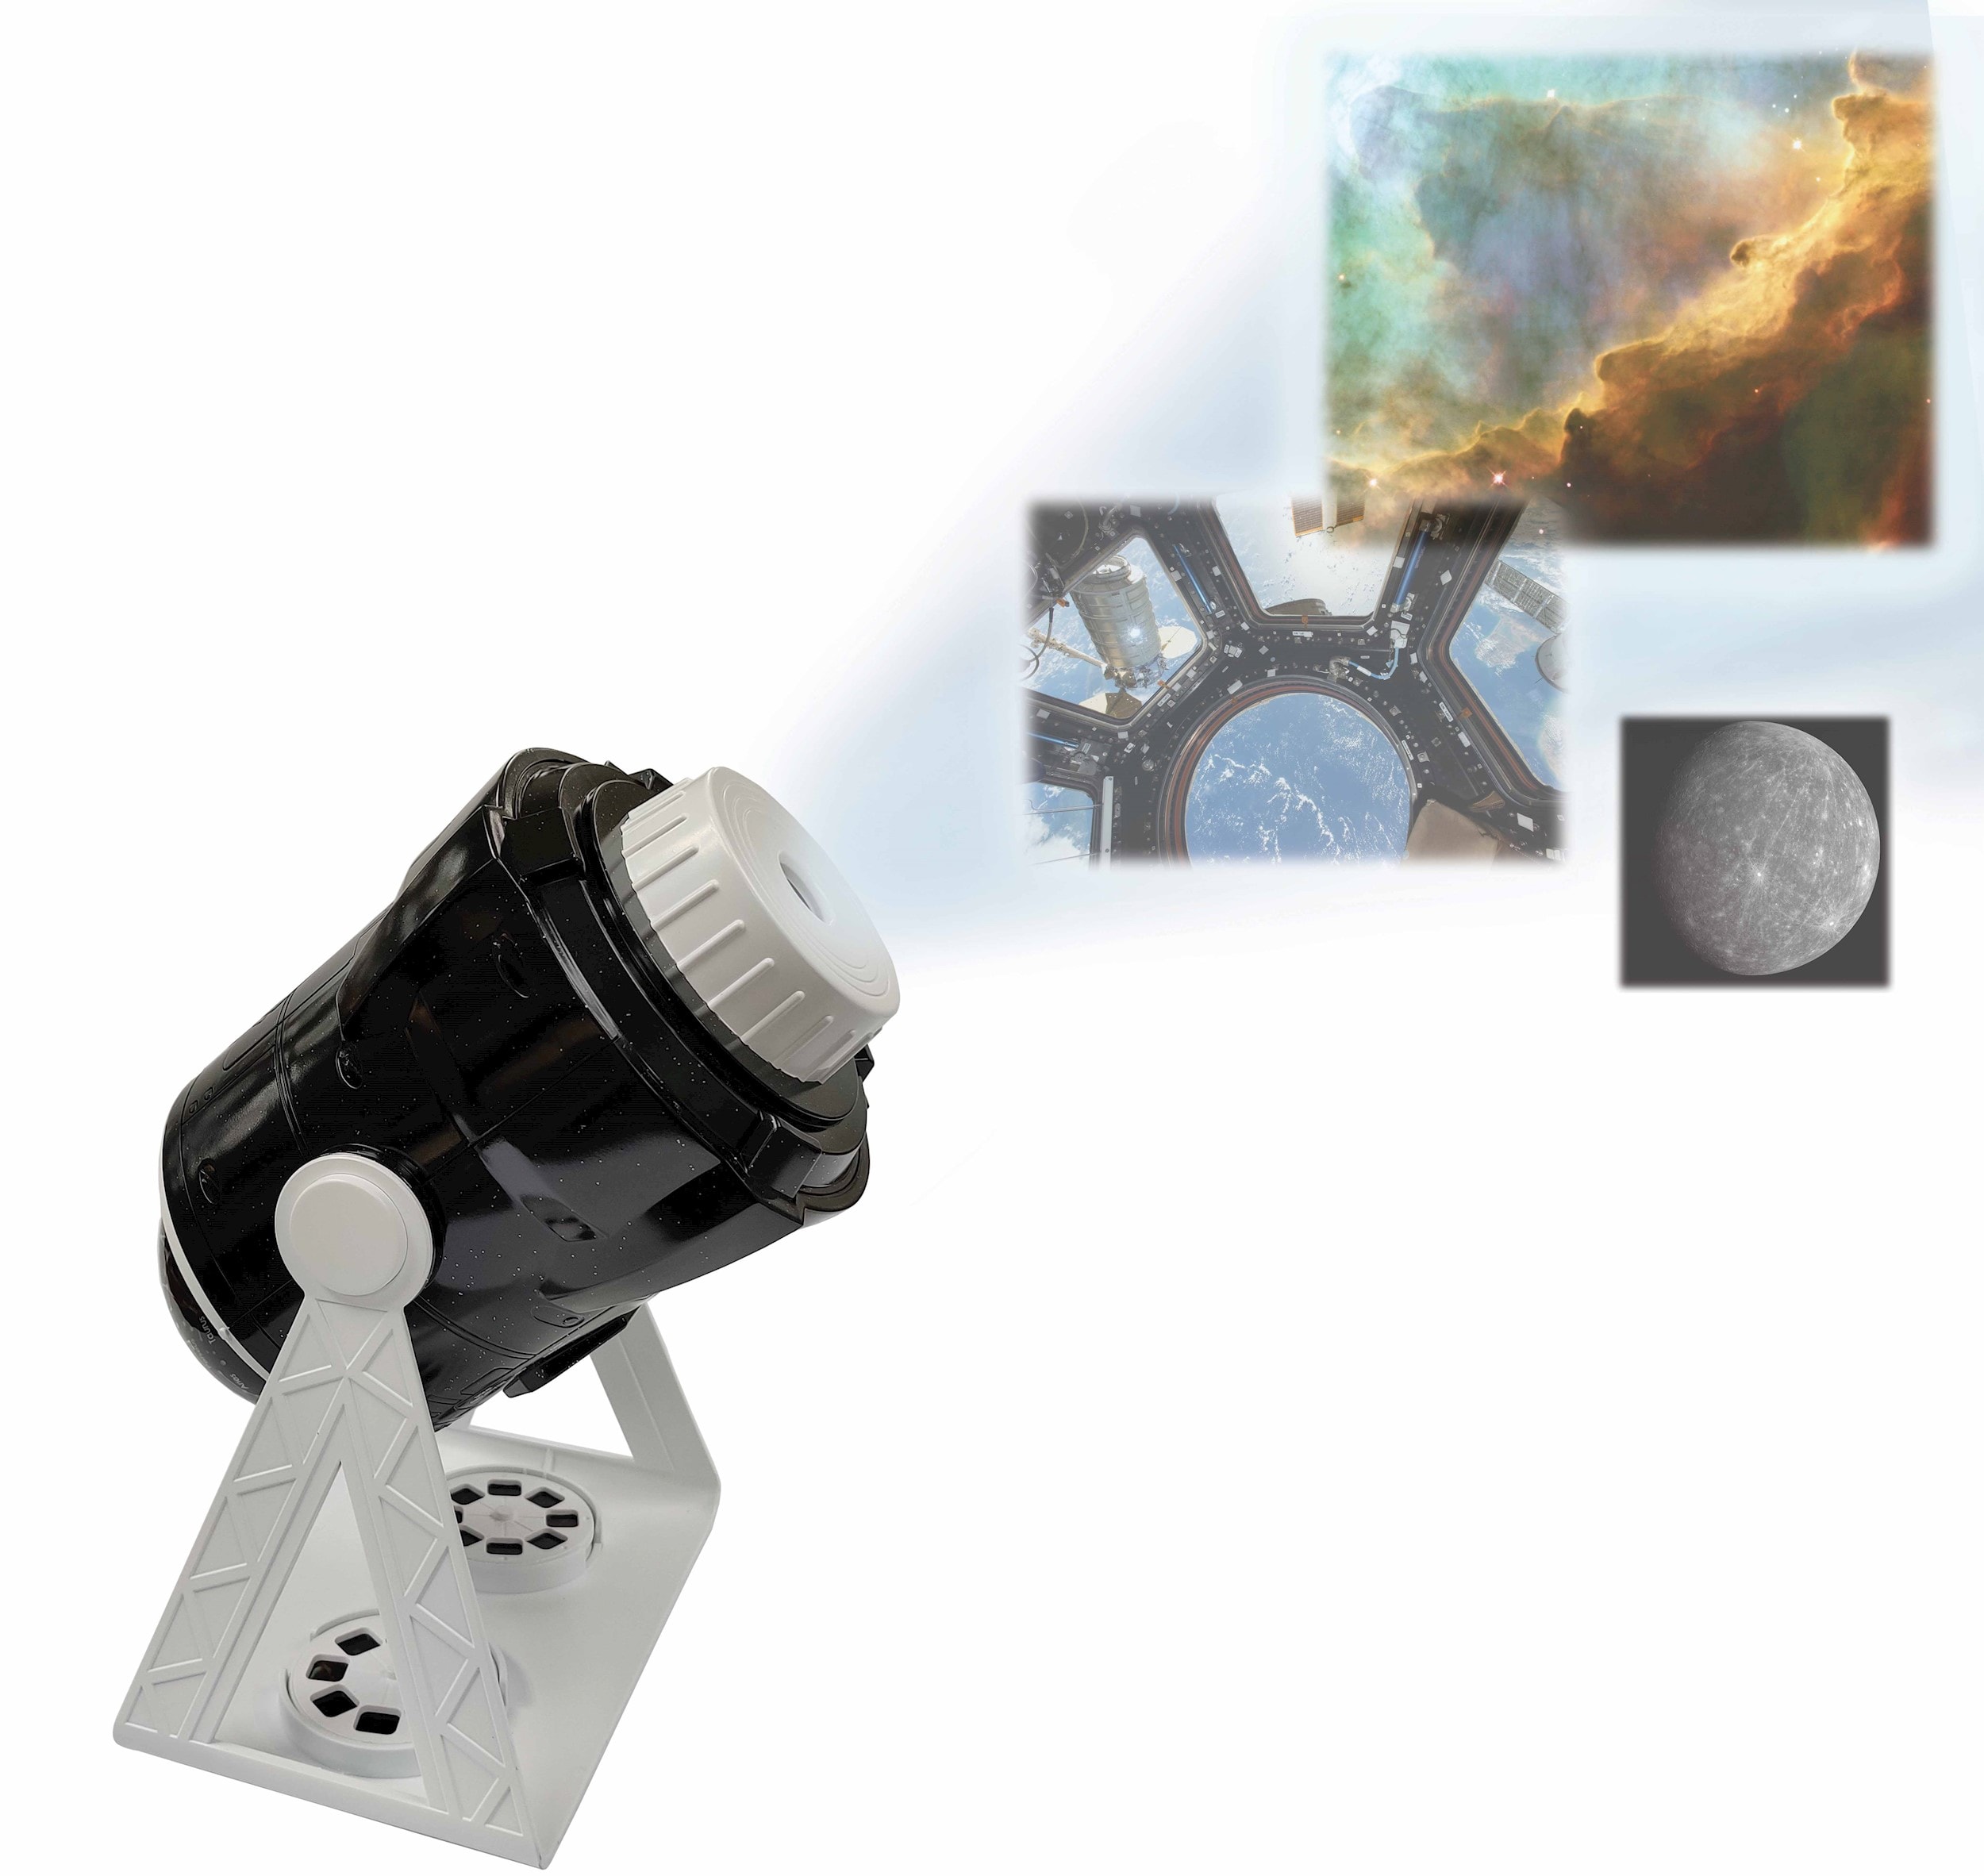 Projecteur planetarium 360° parlant avec 24 projections, carte des  constellations et livret pédagogique (français/anglais) LEXIBOOK Pas Cher 